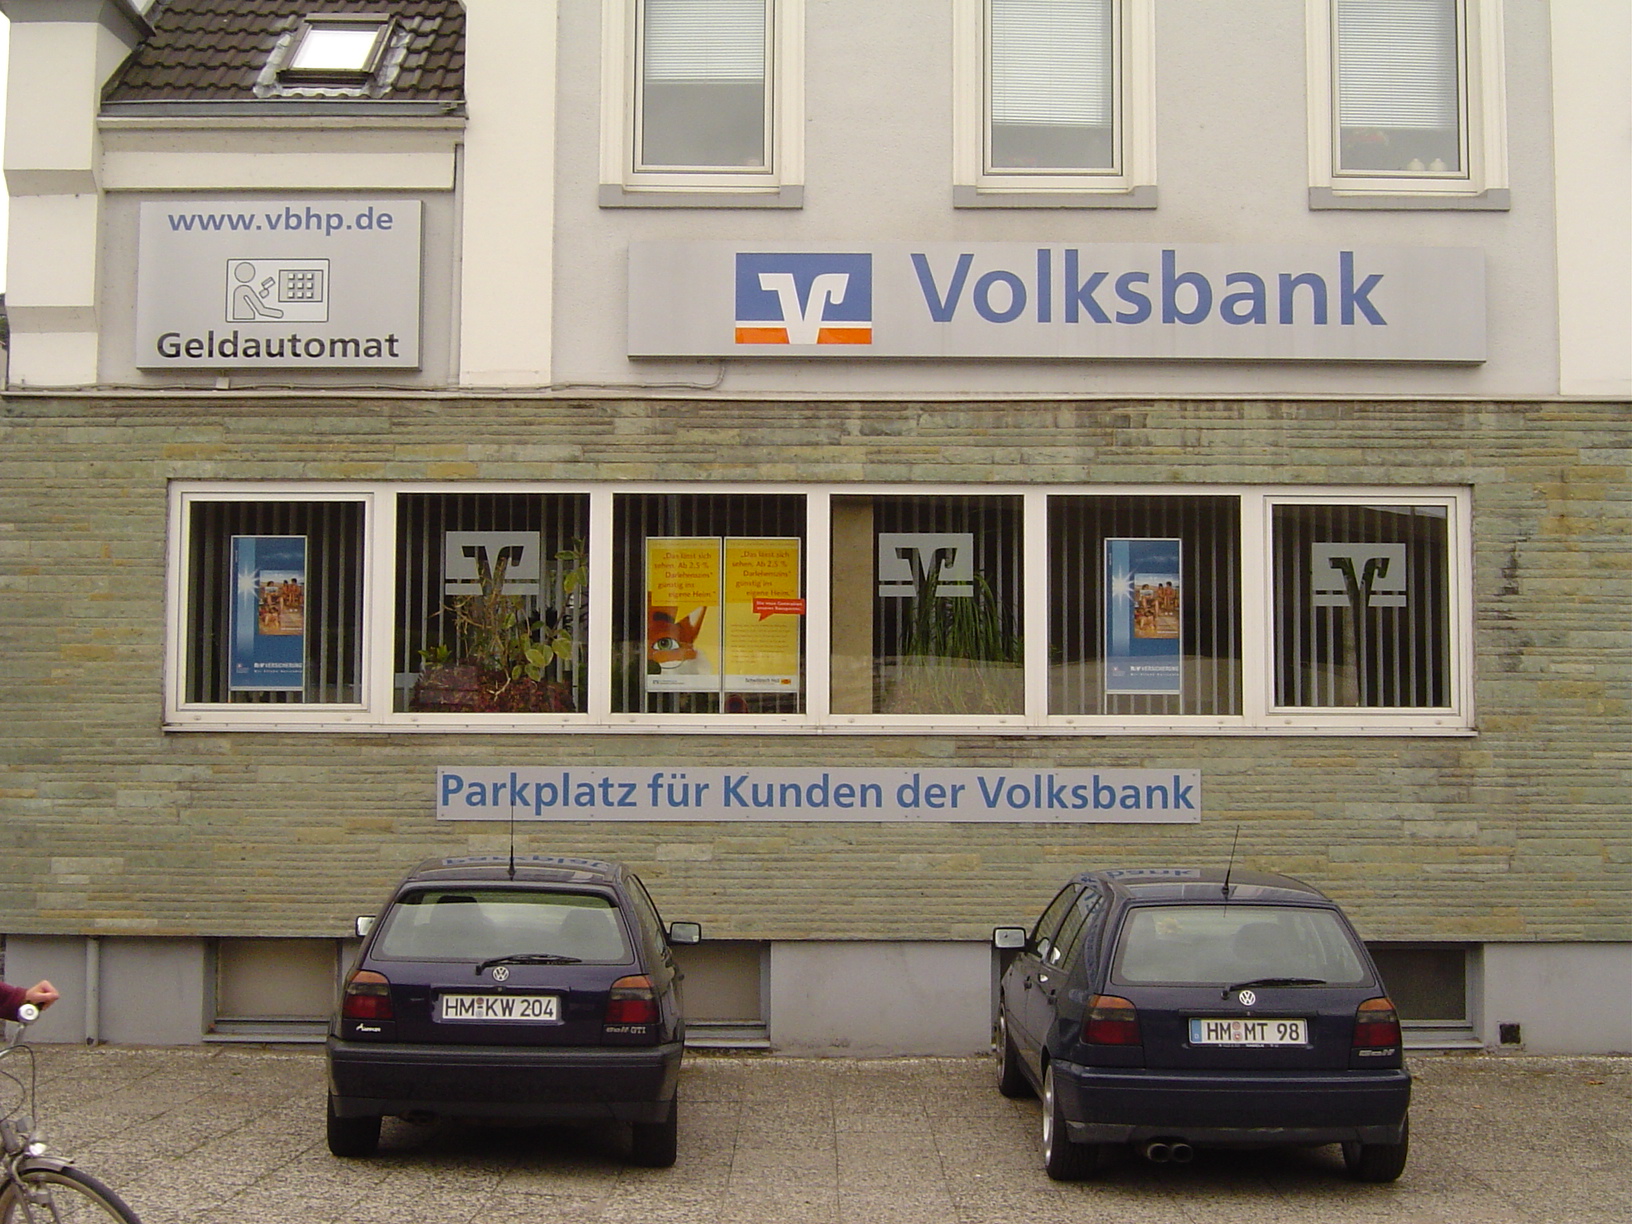 rigoletto facade windows parked cars volksbank bank